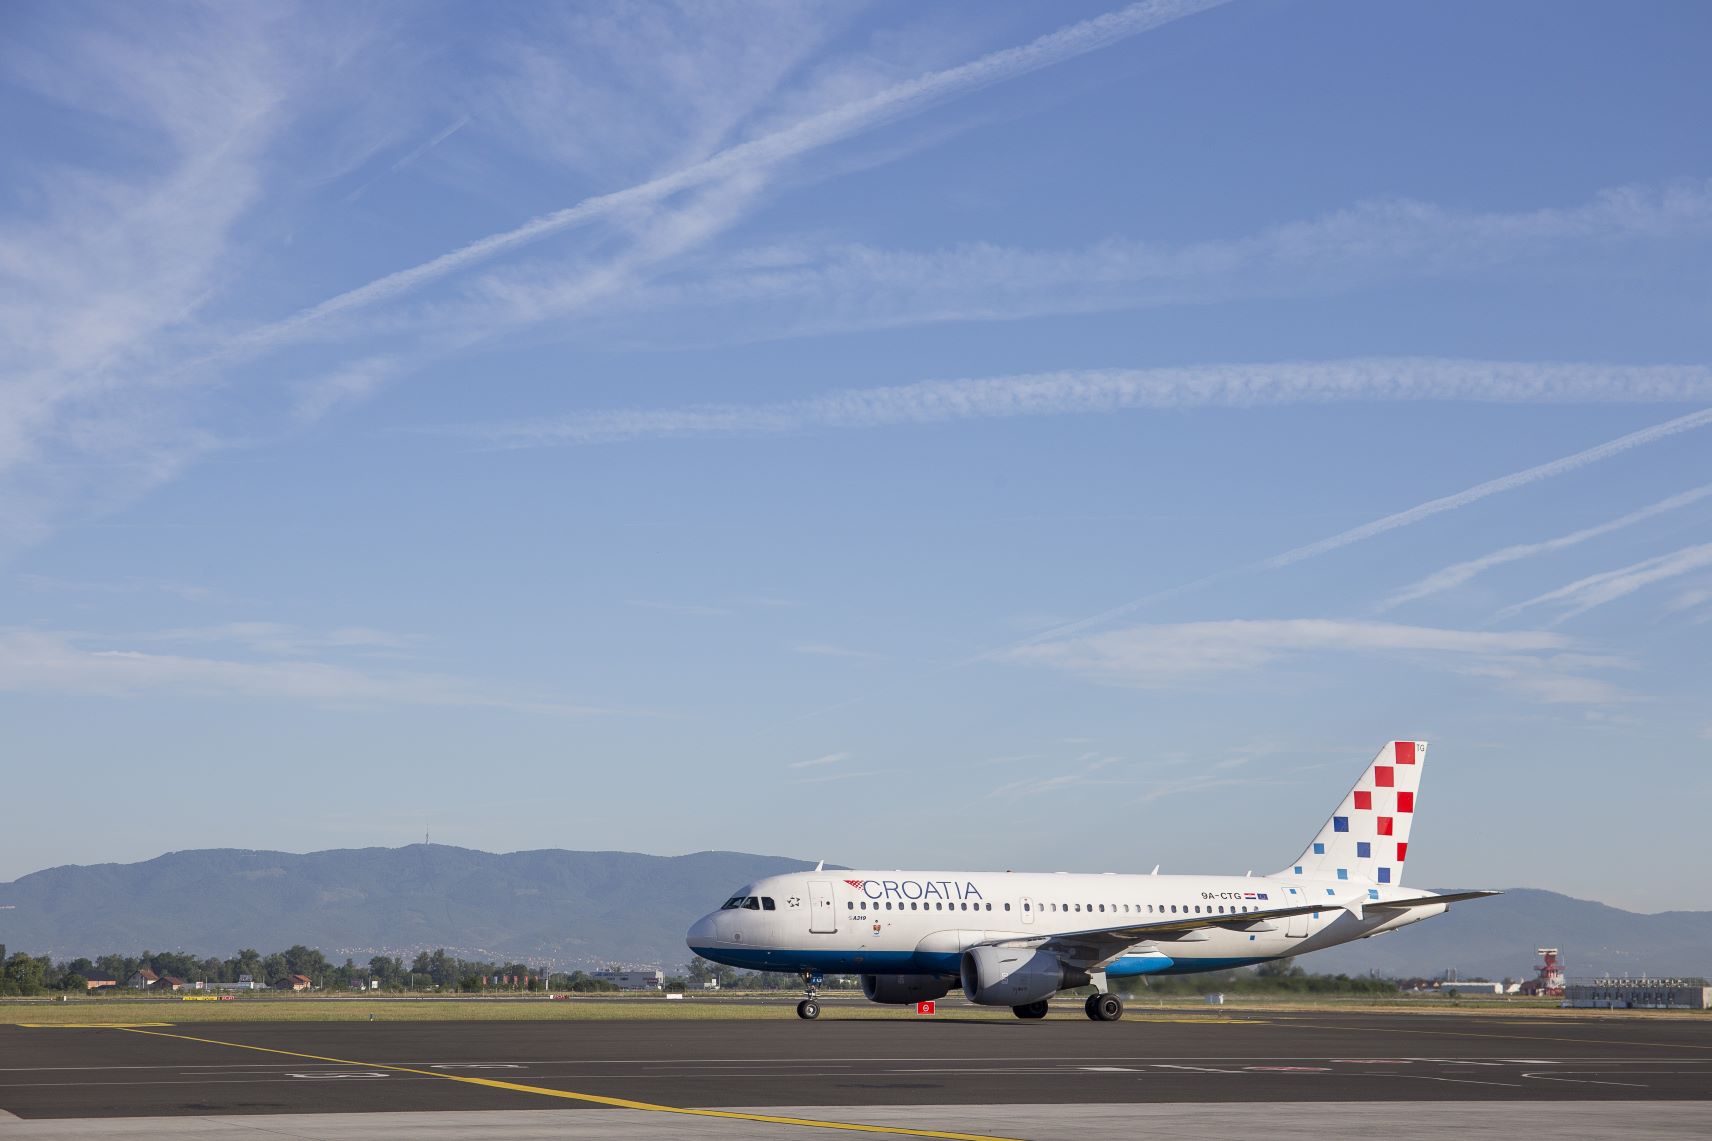 Flugzeug von Croatia Airlines am Boden